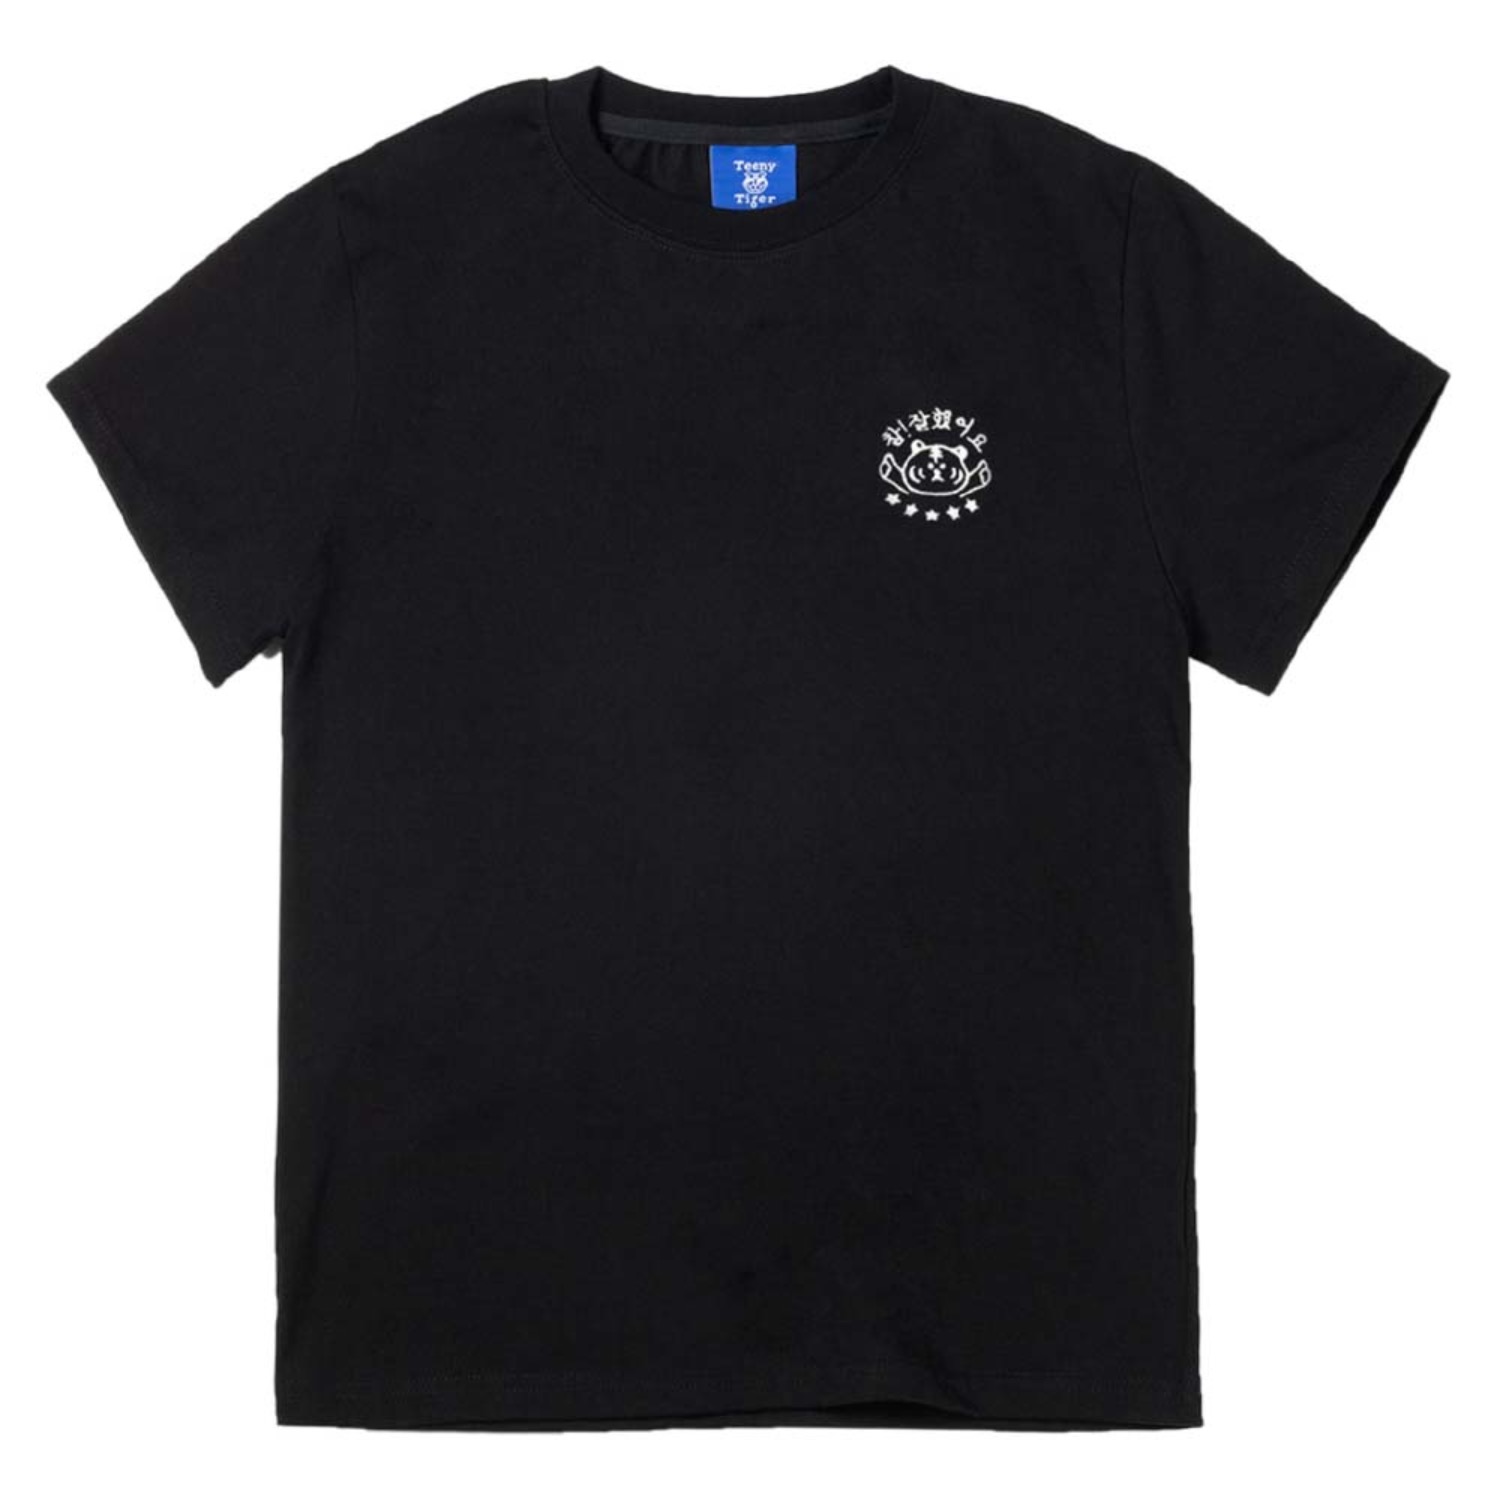 참잘했어요 반팔티셔츠 블랙 The Best Standard-fit short sleeve T-shirts (Black)